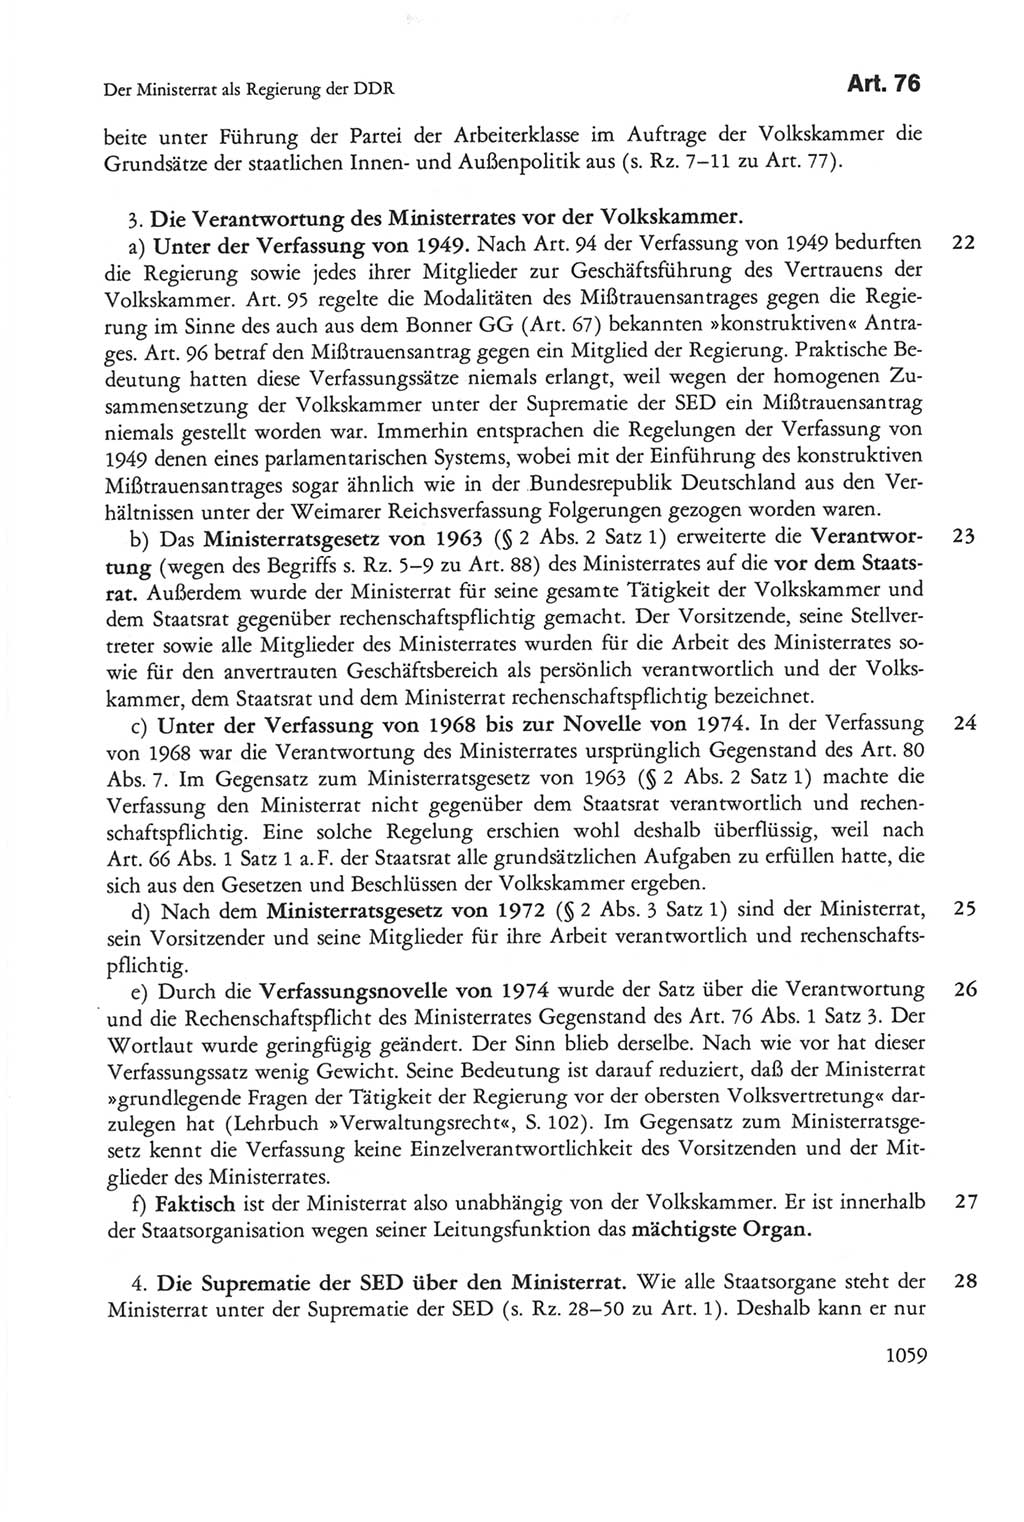 Die sozialistische Verfassung der Deutschen Demokratischen Republik (DDR), Kommentar mit einem Nachtrag 1997, Seite 1059 (Soz. Verf. DDR Komm. Nachtr. 1997, S. 1059)